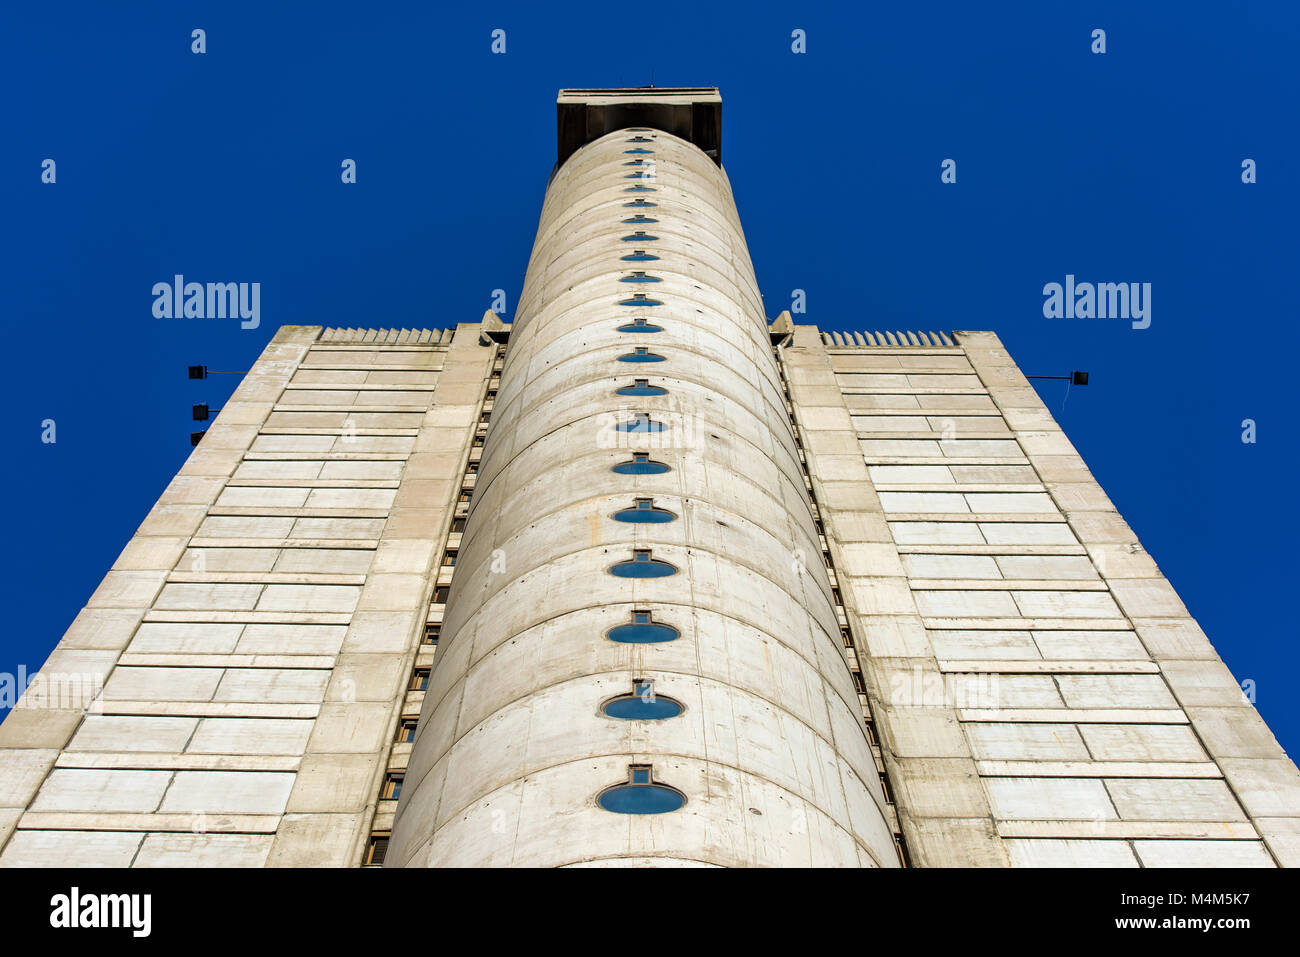 Die westlichen Tor von Belgrad, die Hauptstadt Serbiens, Beispiel des kommunistischen Brutalismus in der Architektur Stockfoto